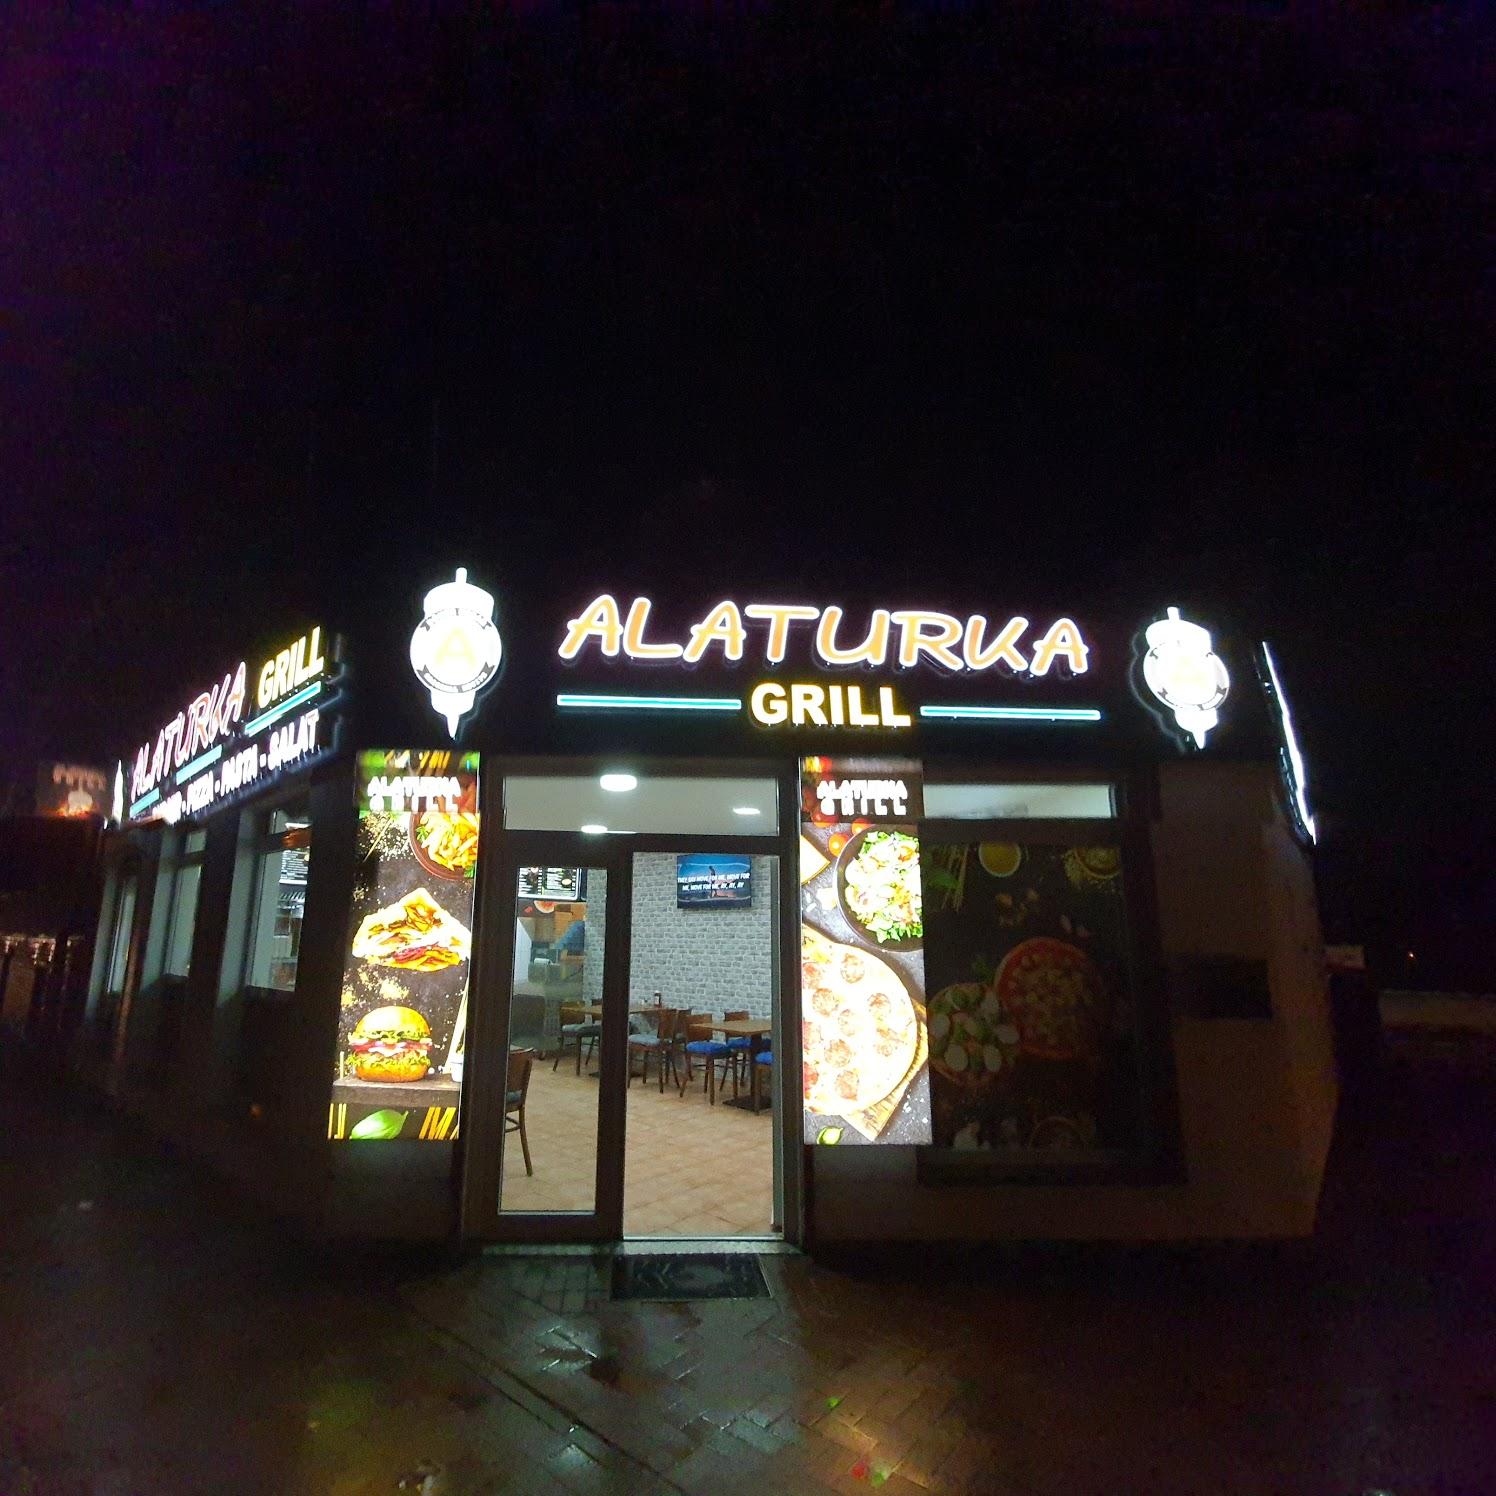 Restaurant "Grillhaus Alaturka" in Luckenwalde